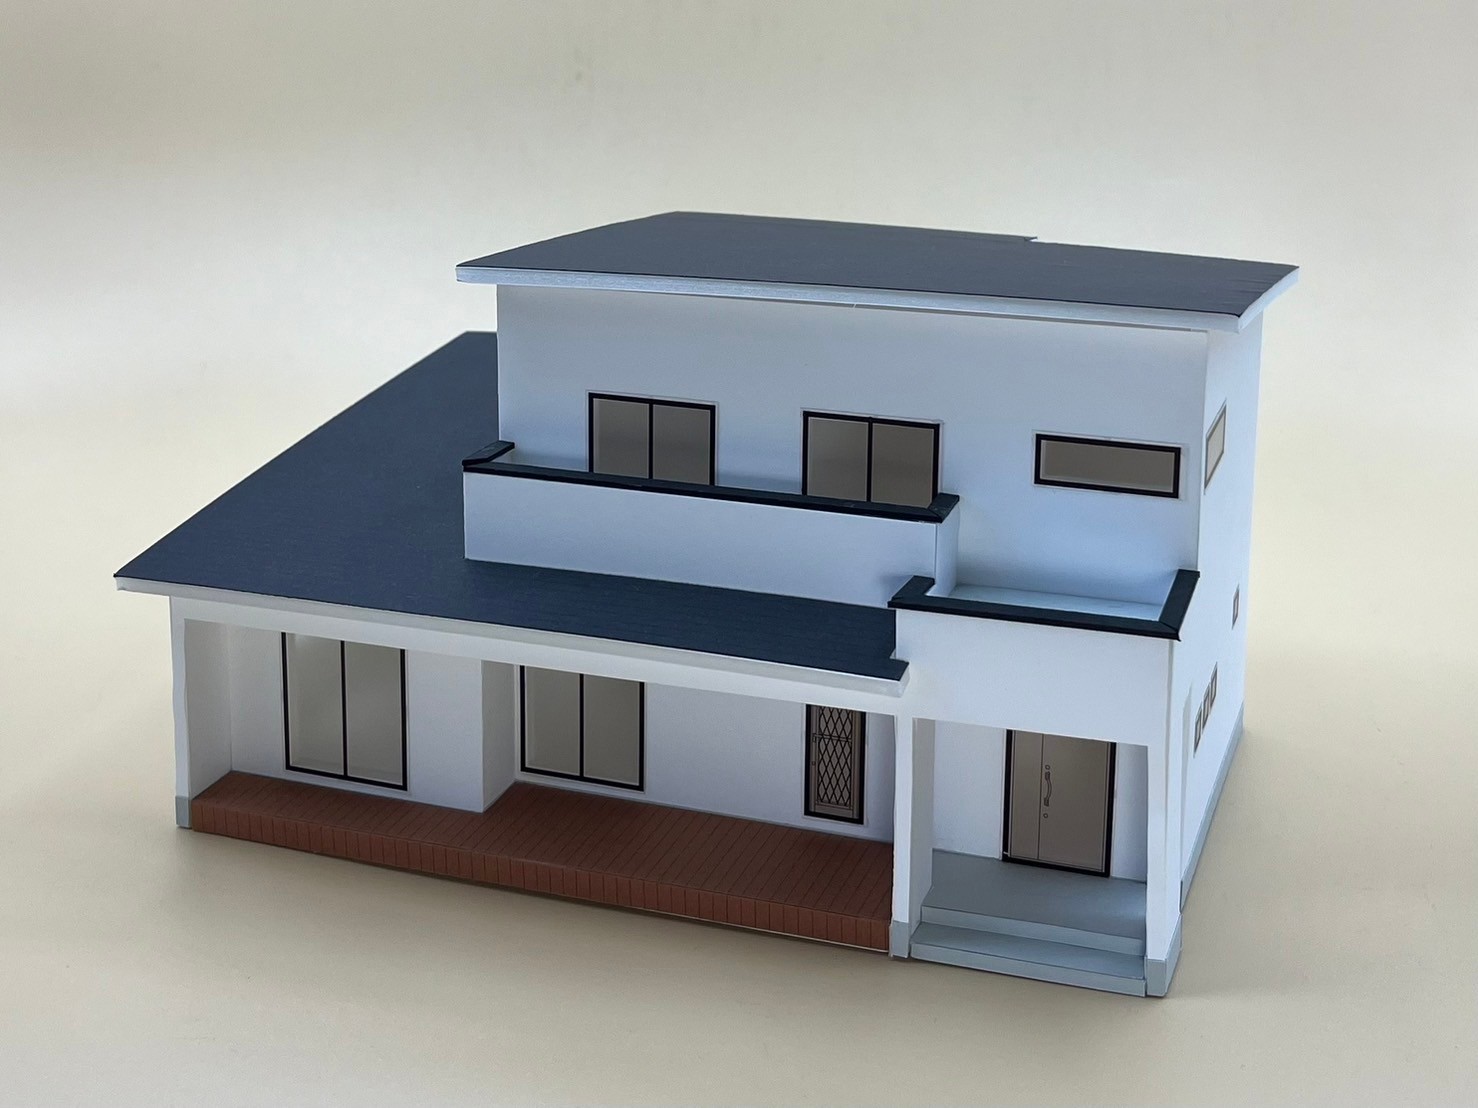 中古模型販売ページ | 住宅模型キット「dekita」特設サイト